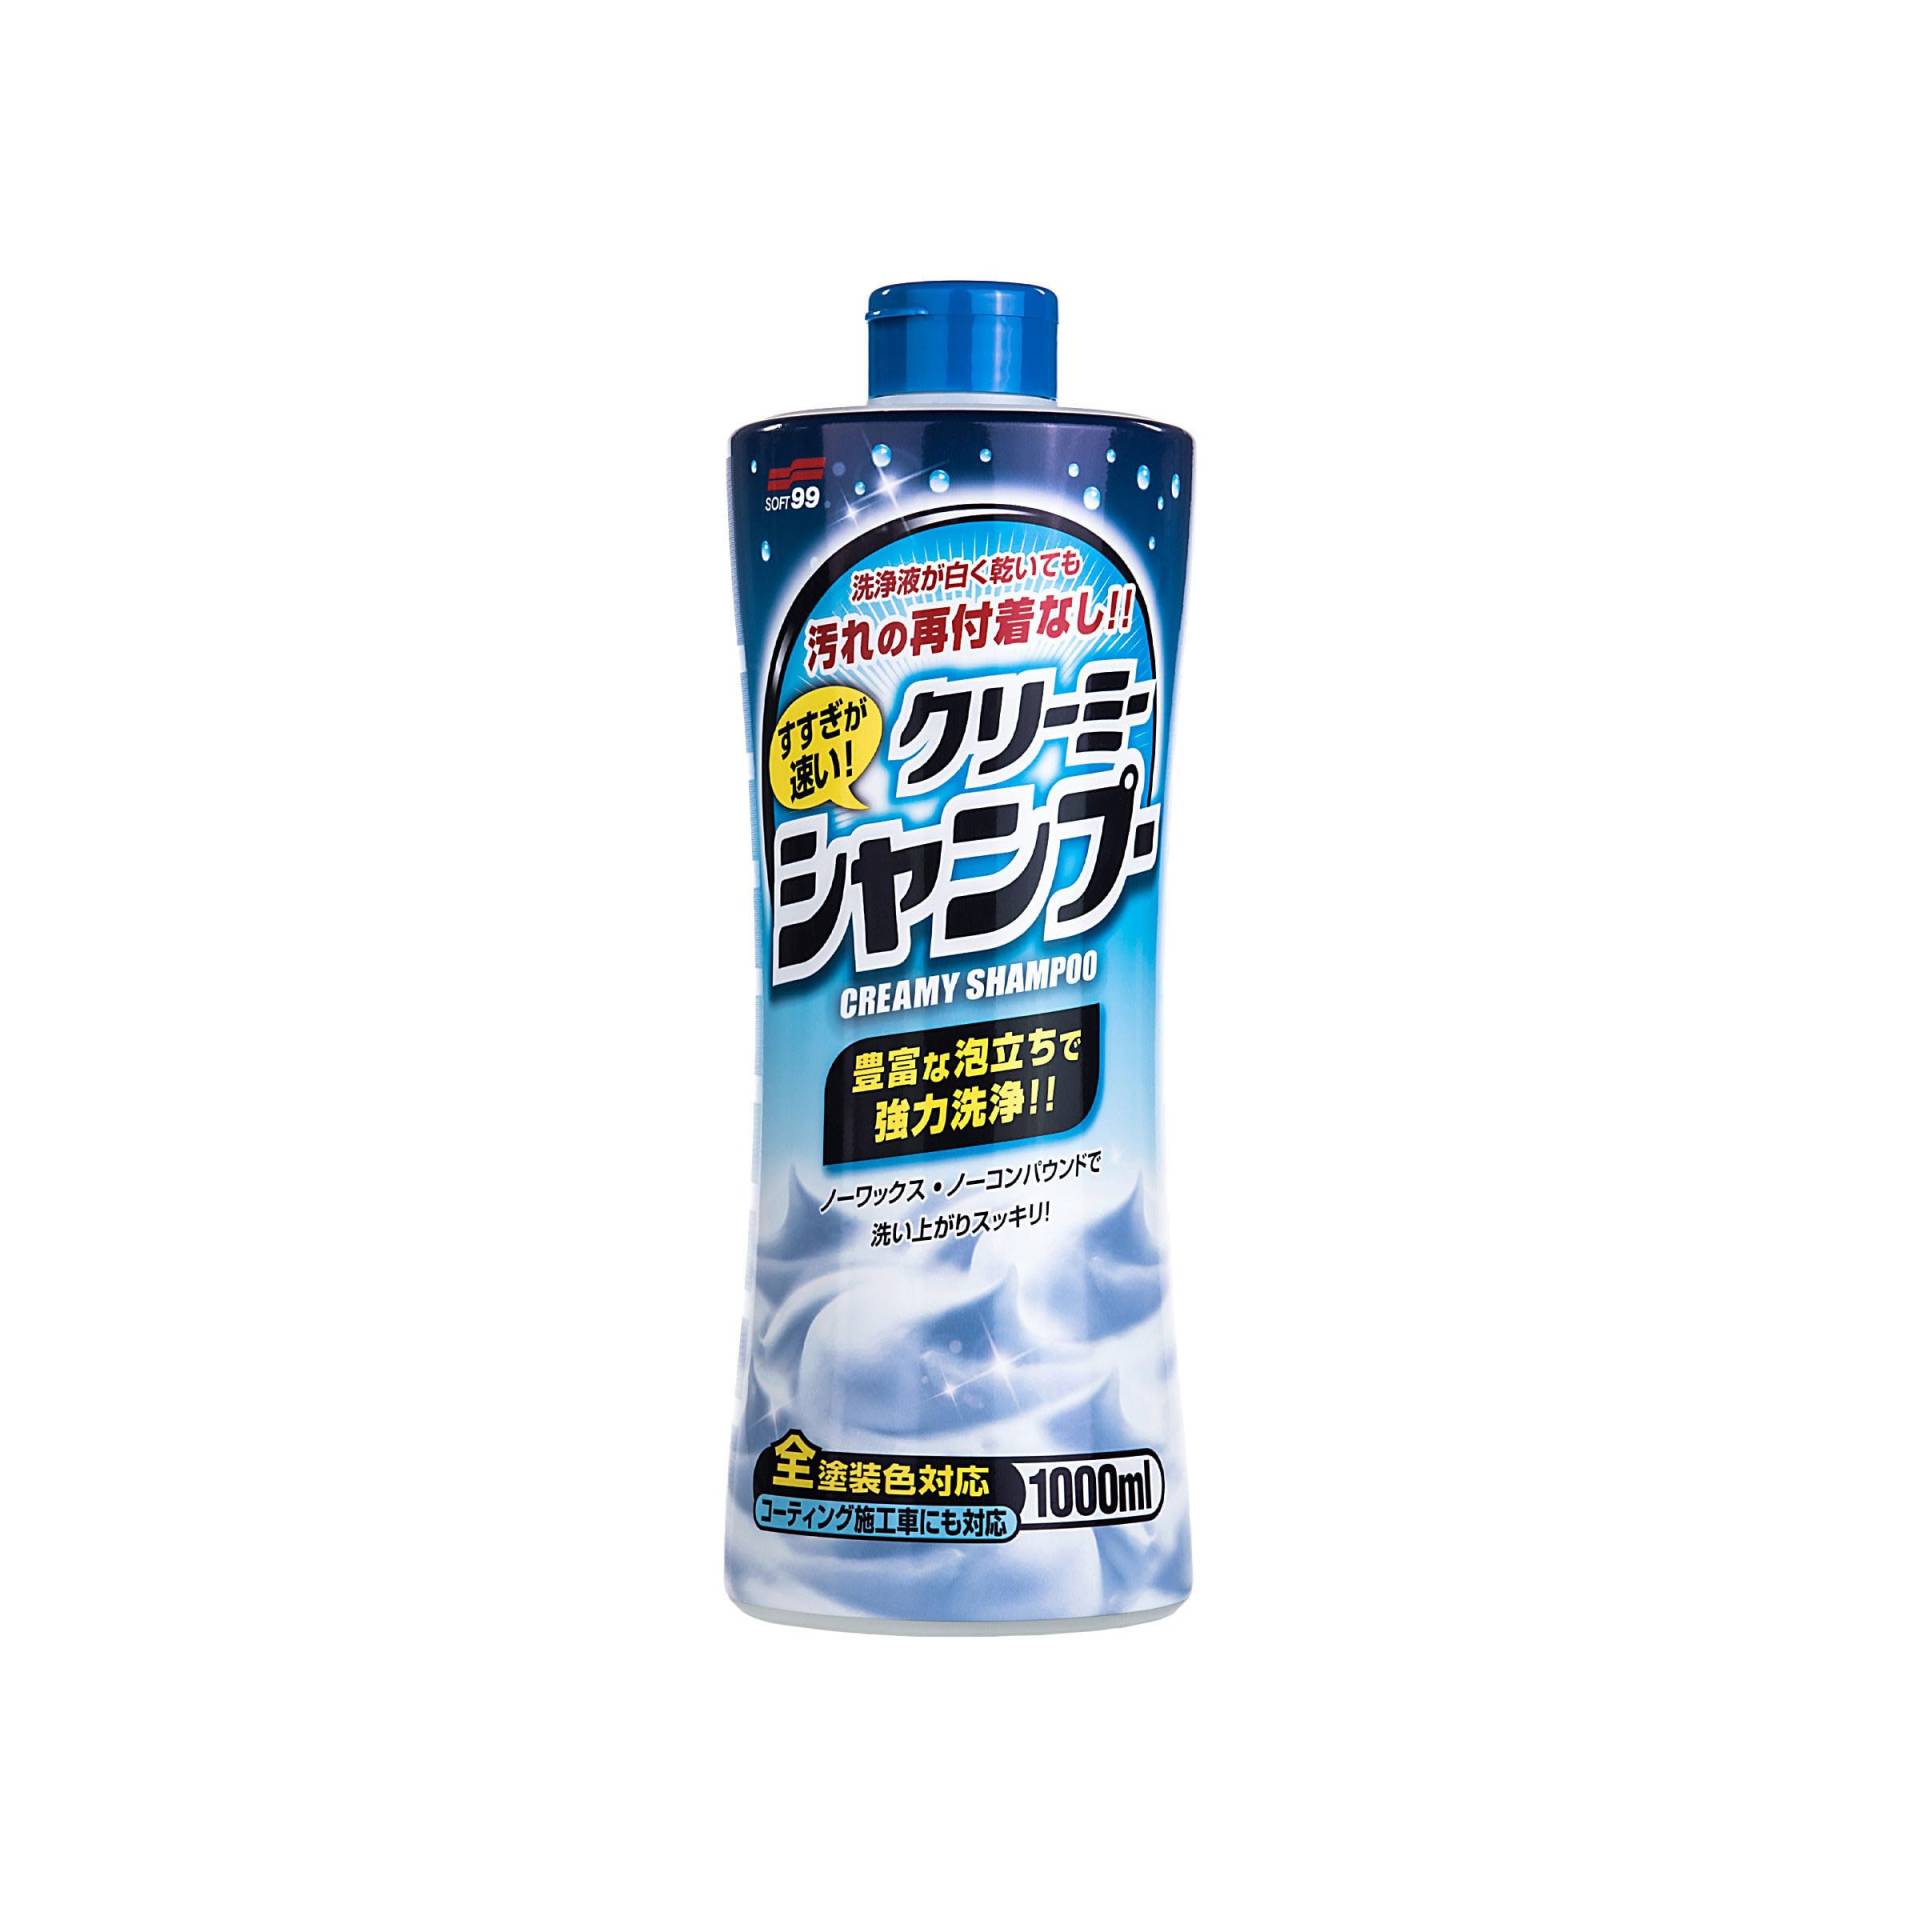 SOFT99 4280 Neutral Shampoo Creamy, 1000 ml von SOFT99